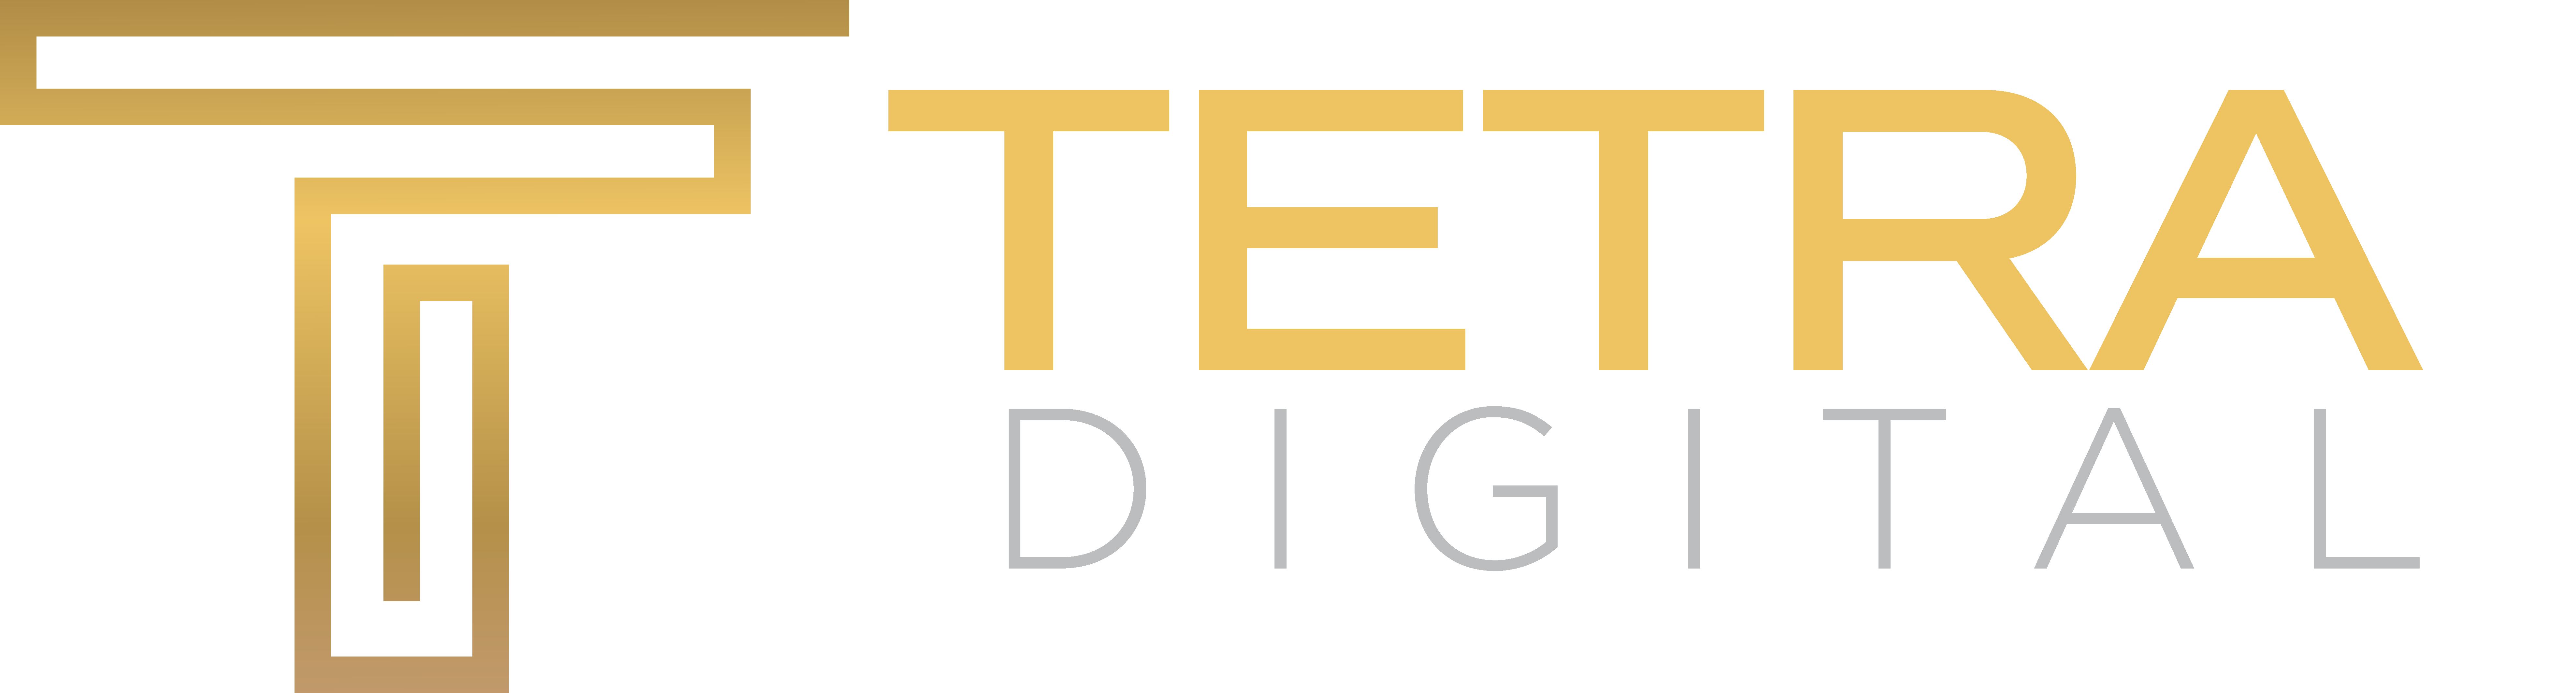 Tetra Digital